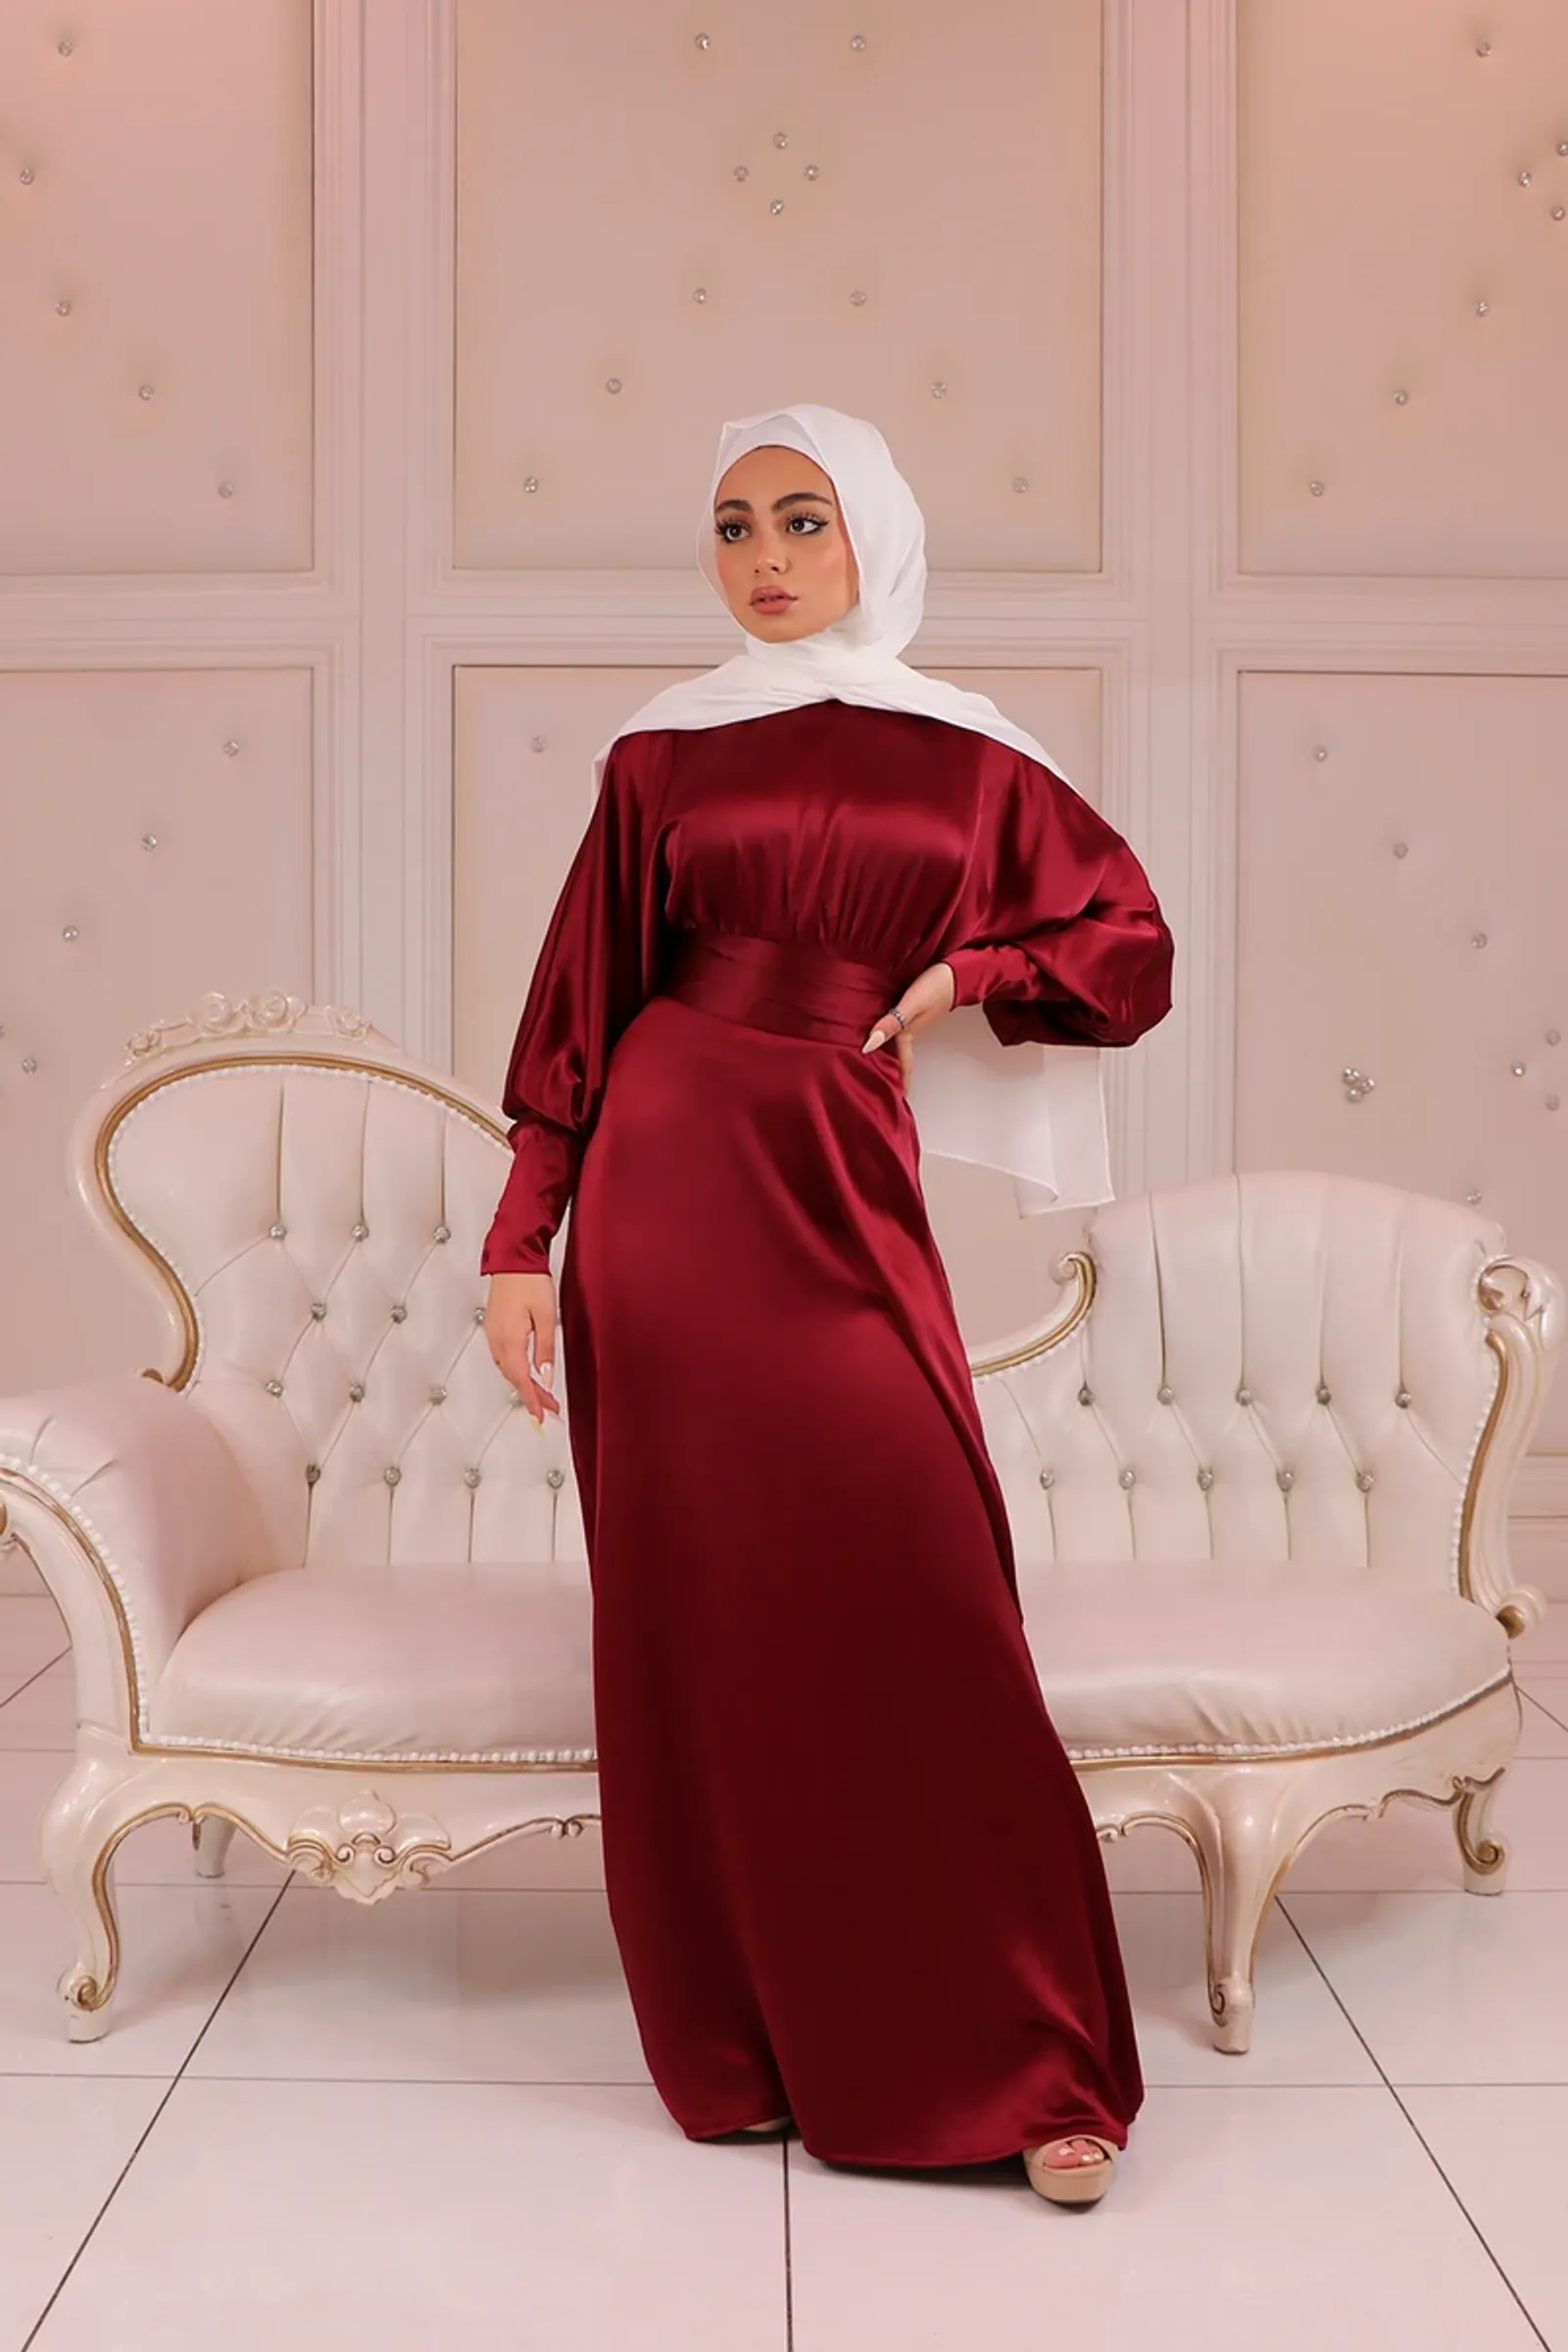 9 Warna Jilbab yang Cocok dengan Baju Merah, Tampak Elegan!